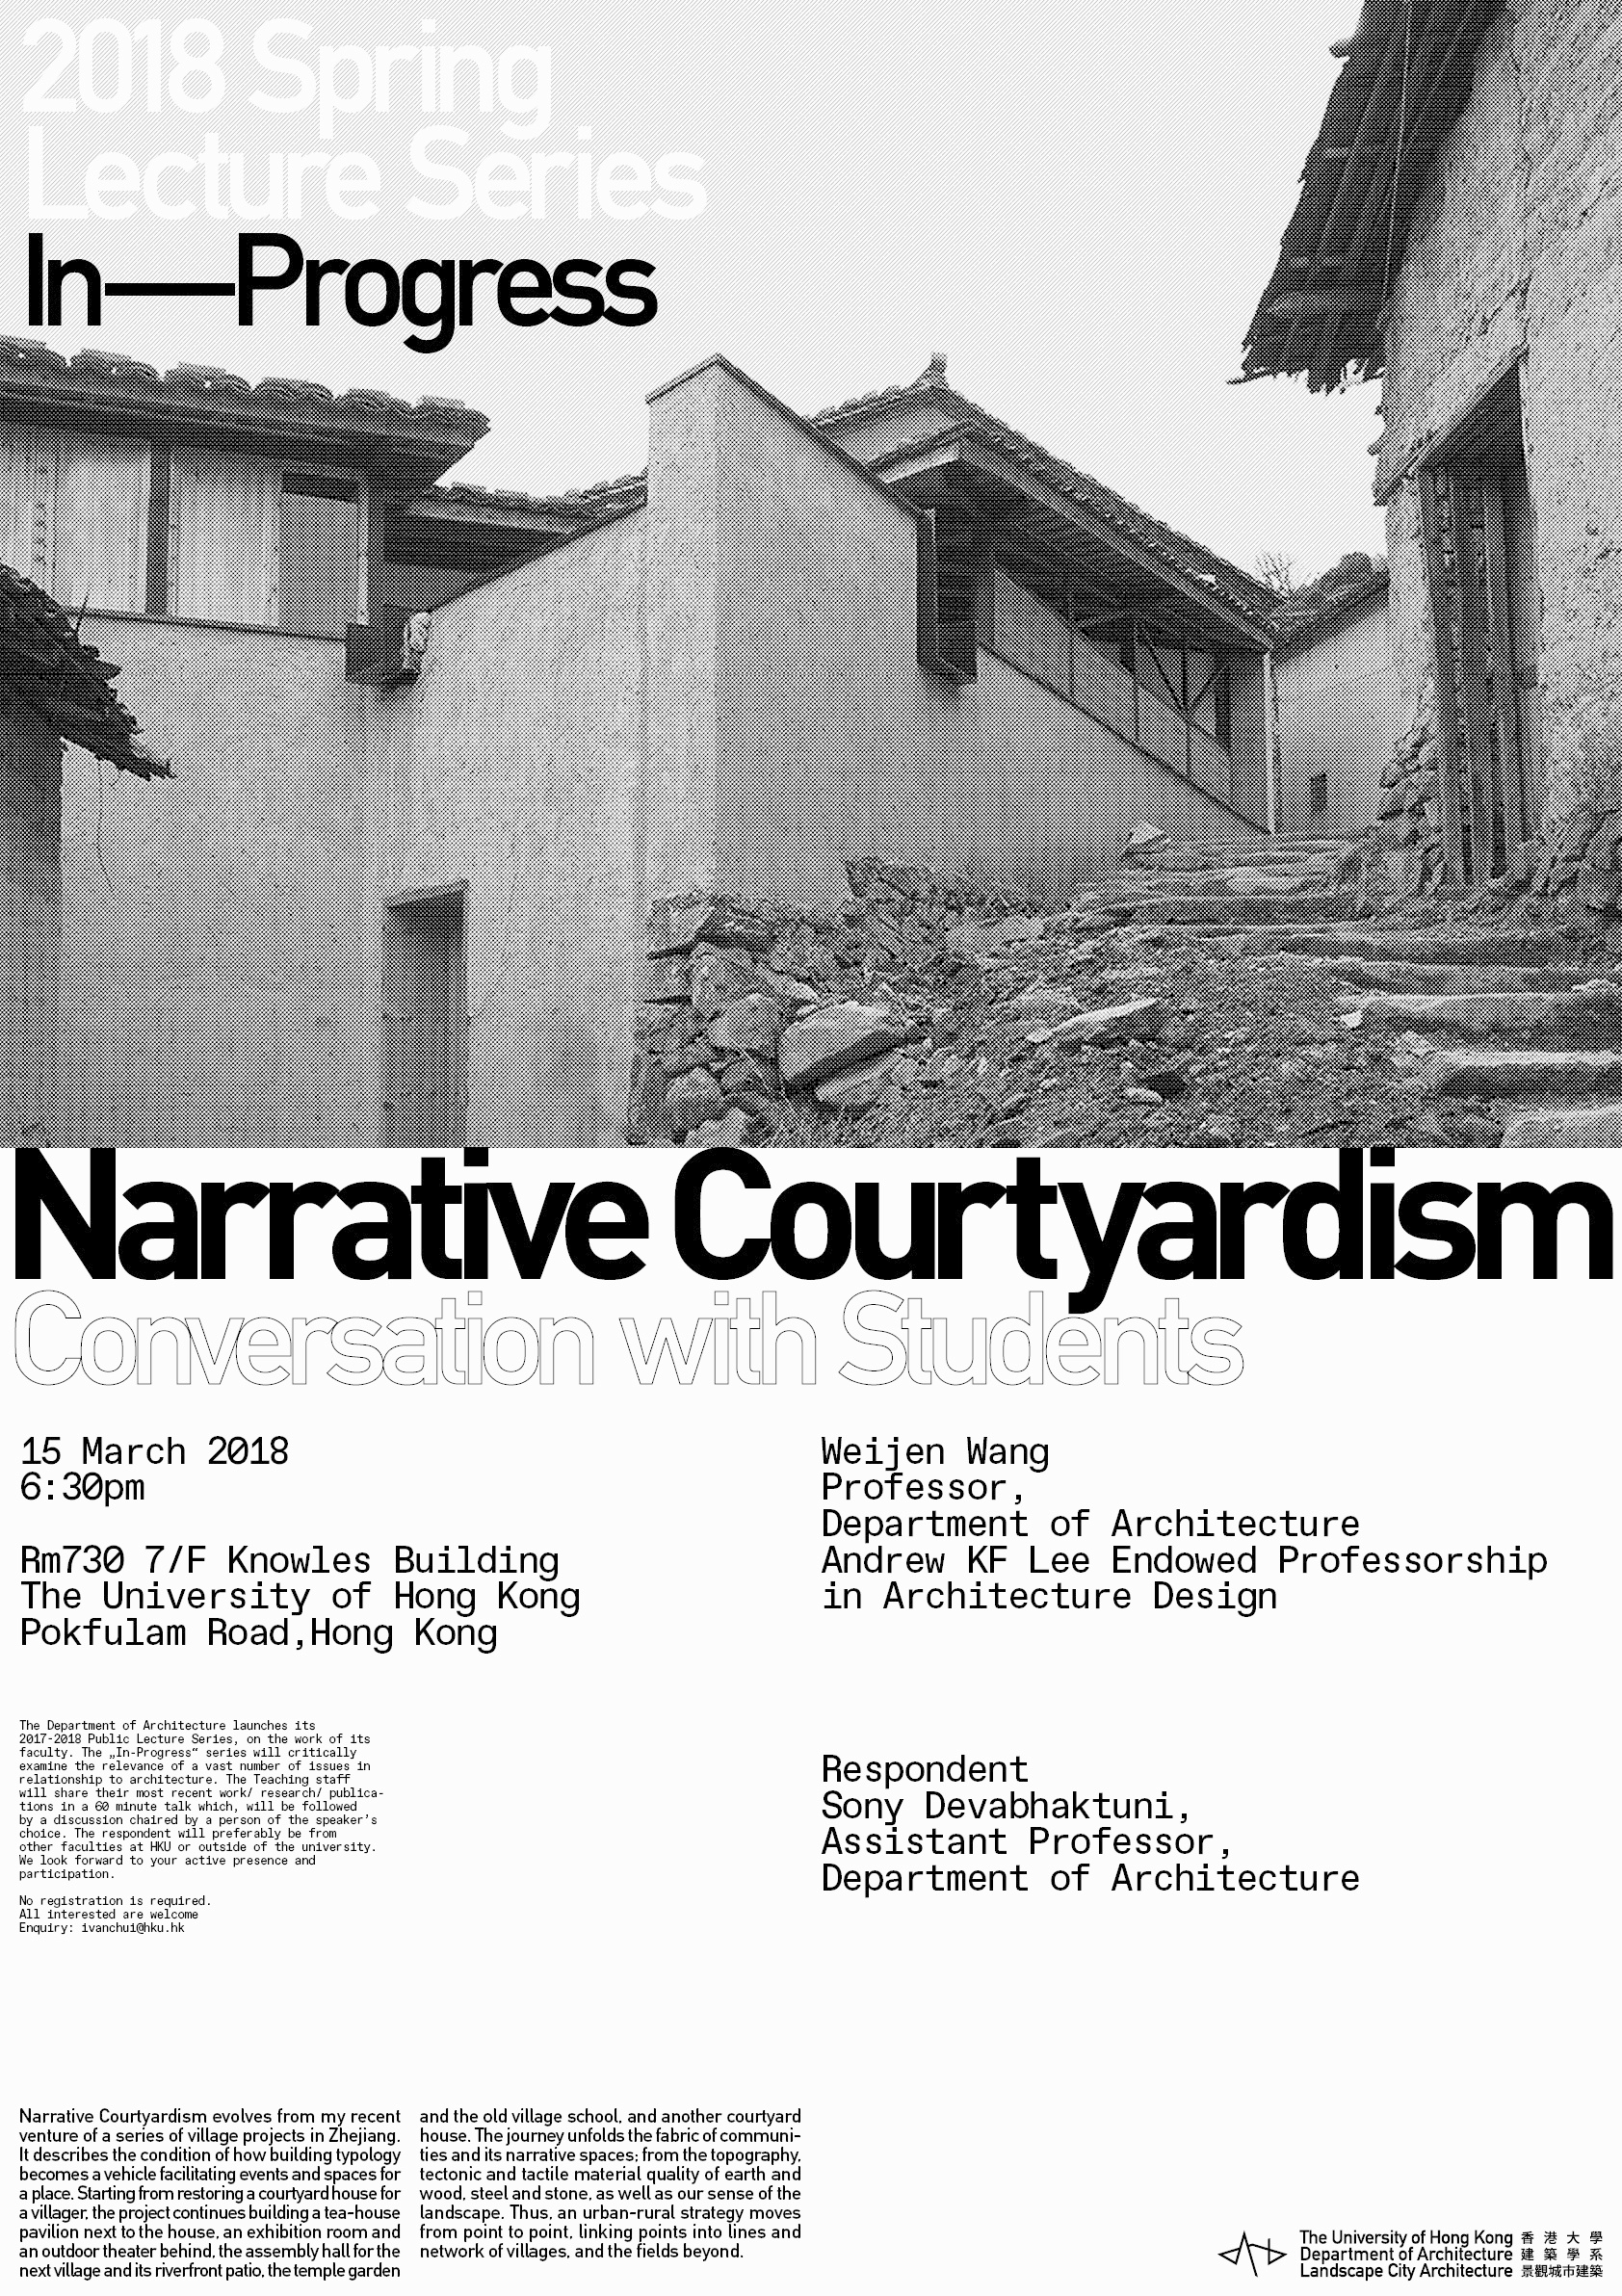 'Narrative Courtyardism' by Weijen Wang